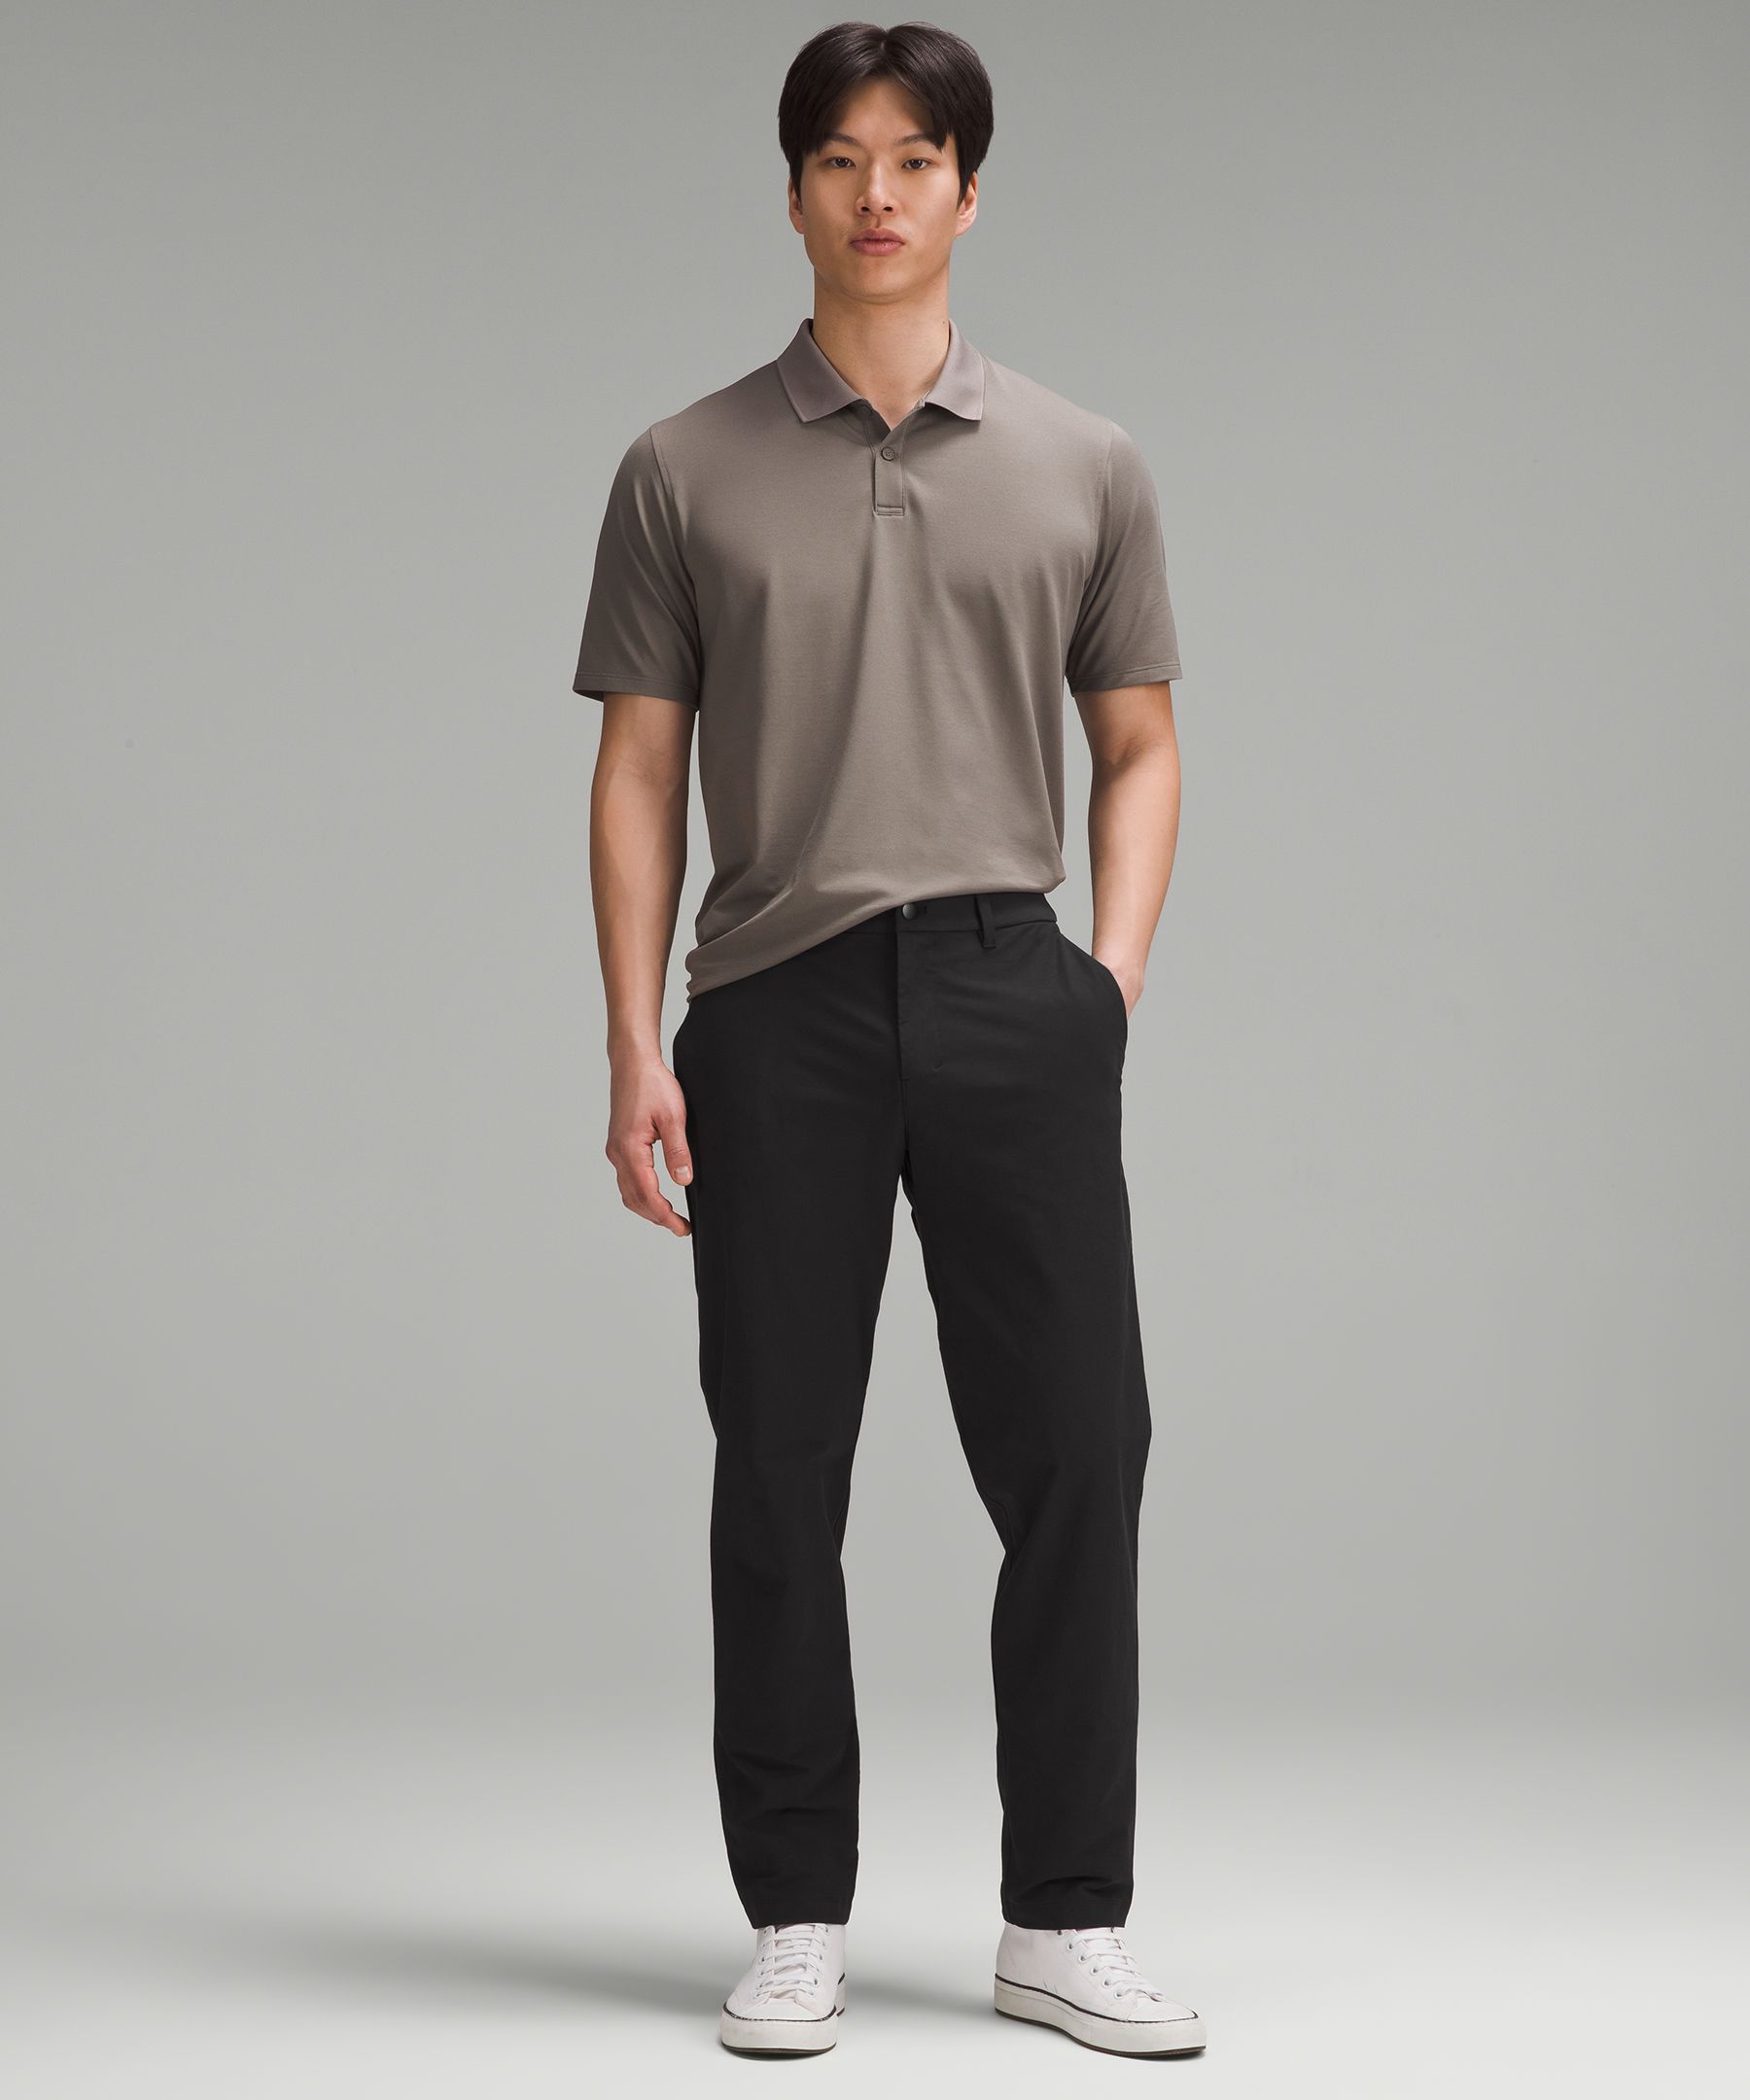 Lululemon Charcoal Gray ABC Classic Fit Pants-Men's 36x32 NWOT